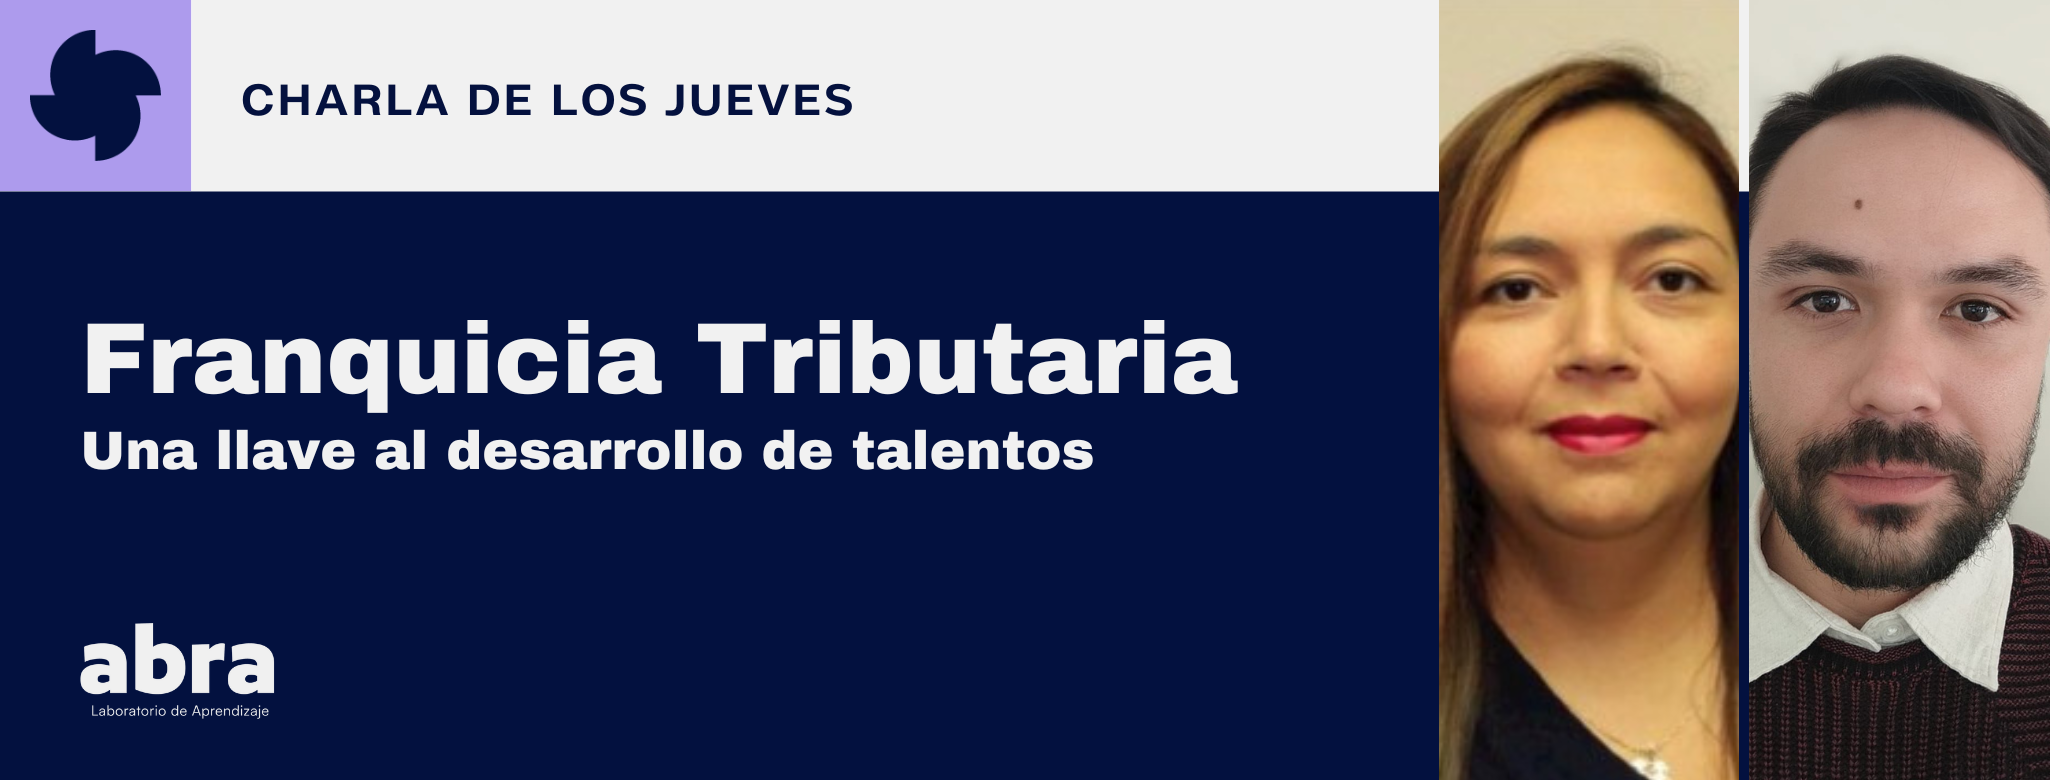 Franquicia Tributaria: Una llave al desarrollo de talentos